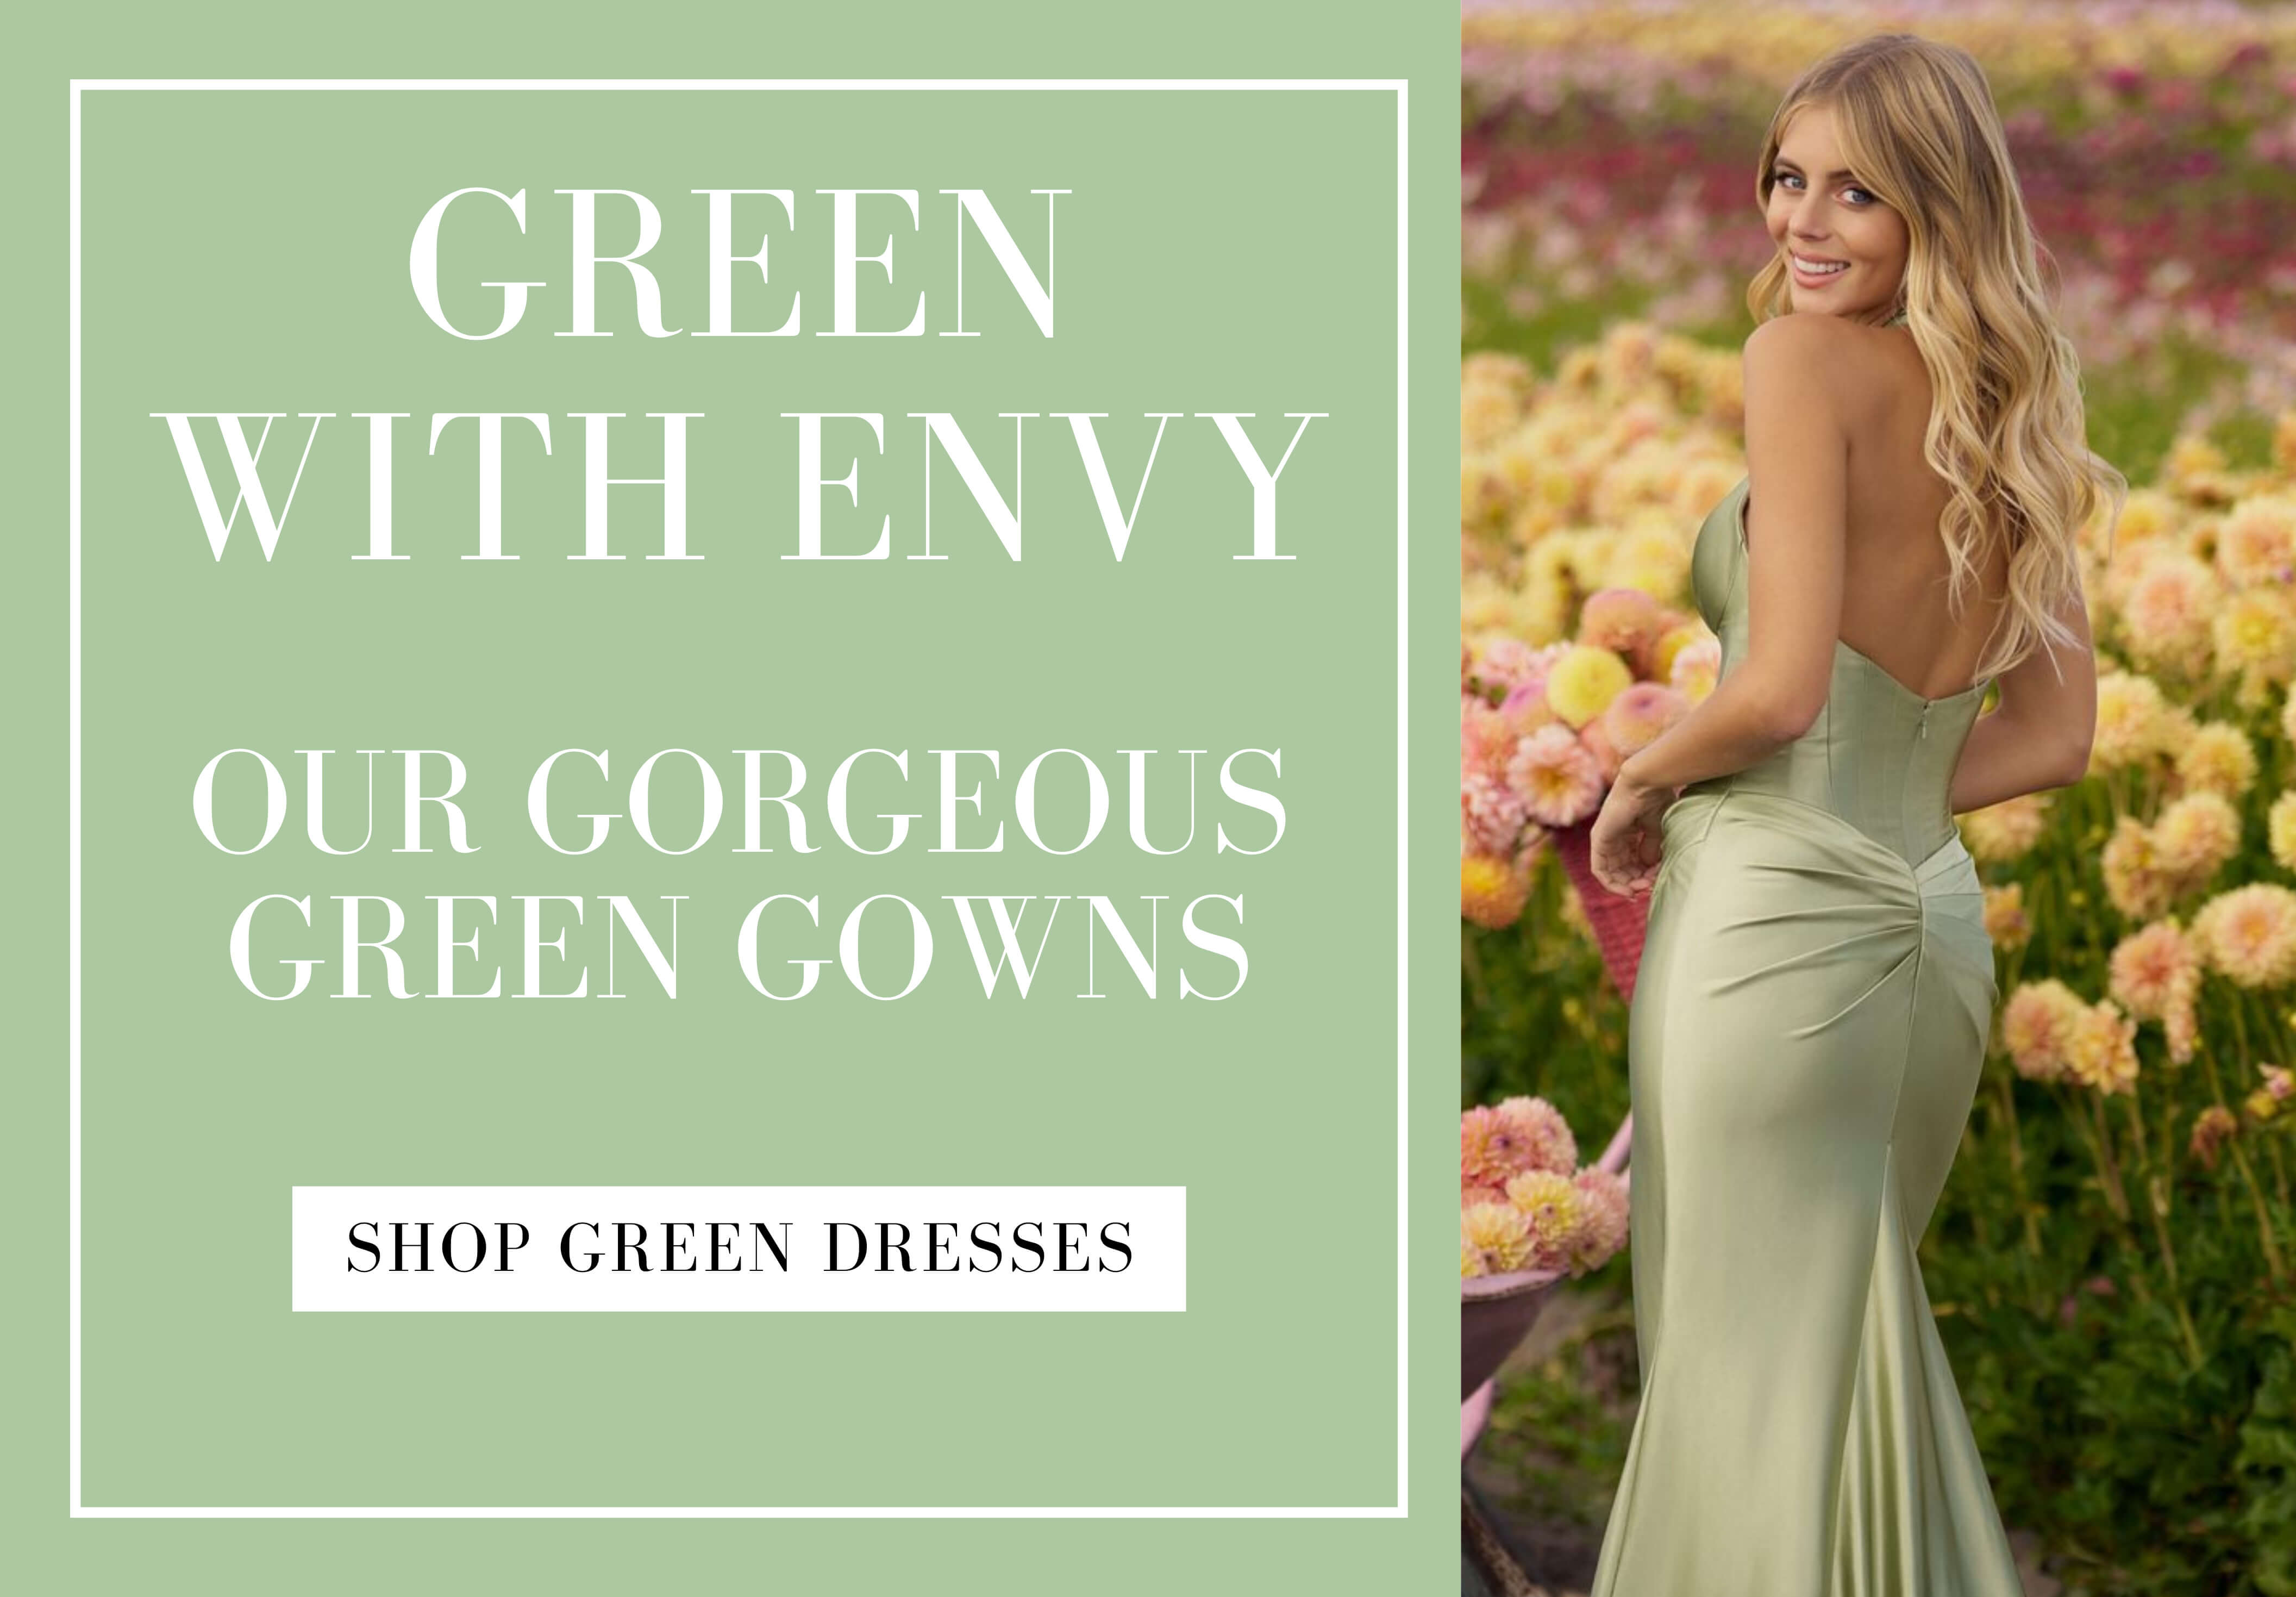 Green with envy dresses. Desktop Image